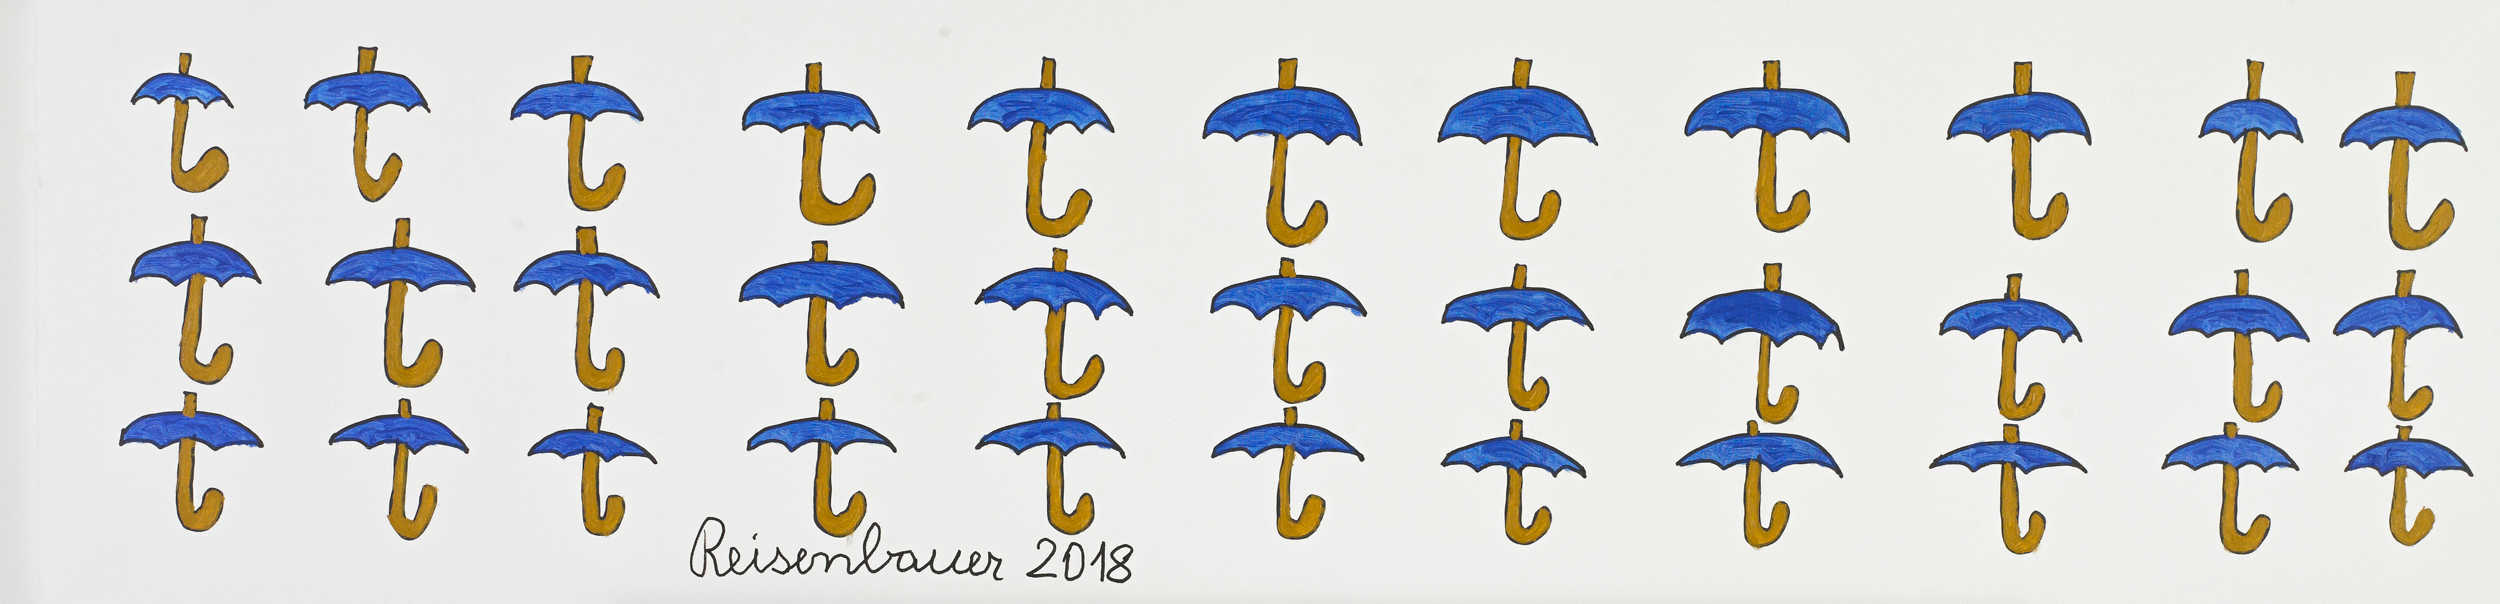 reisenbauer heinrich - Schirme / Umbrellas